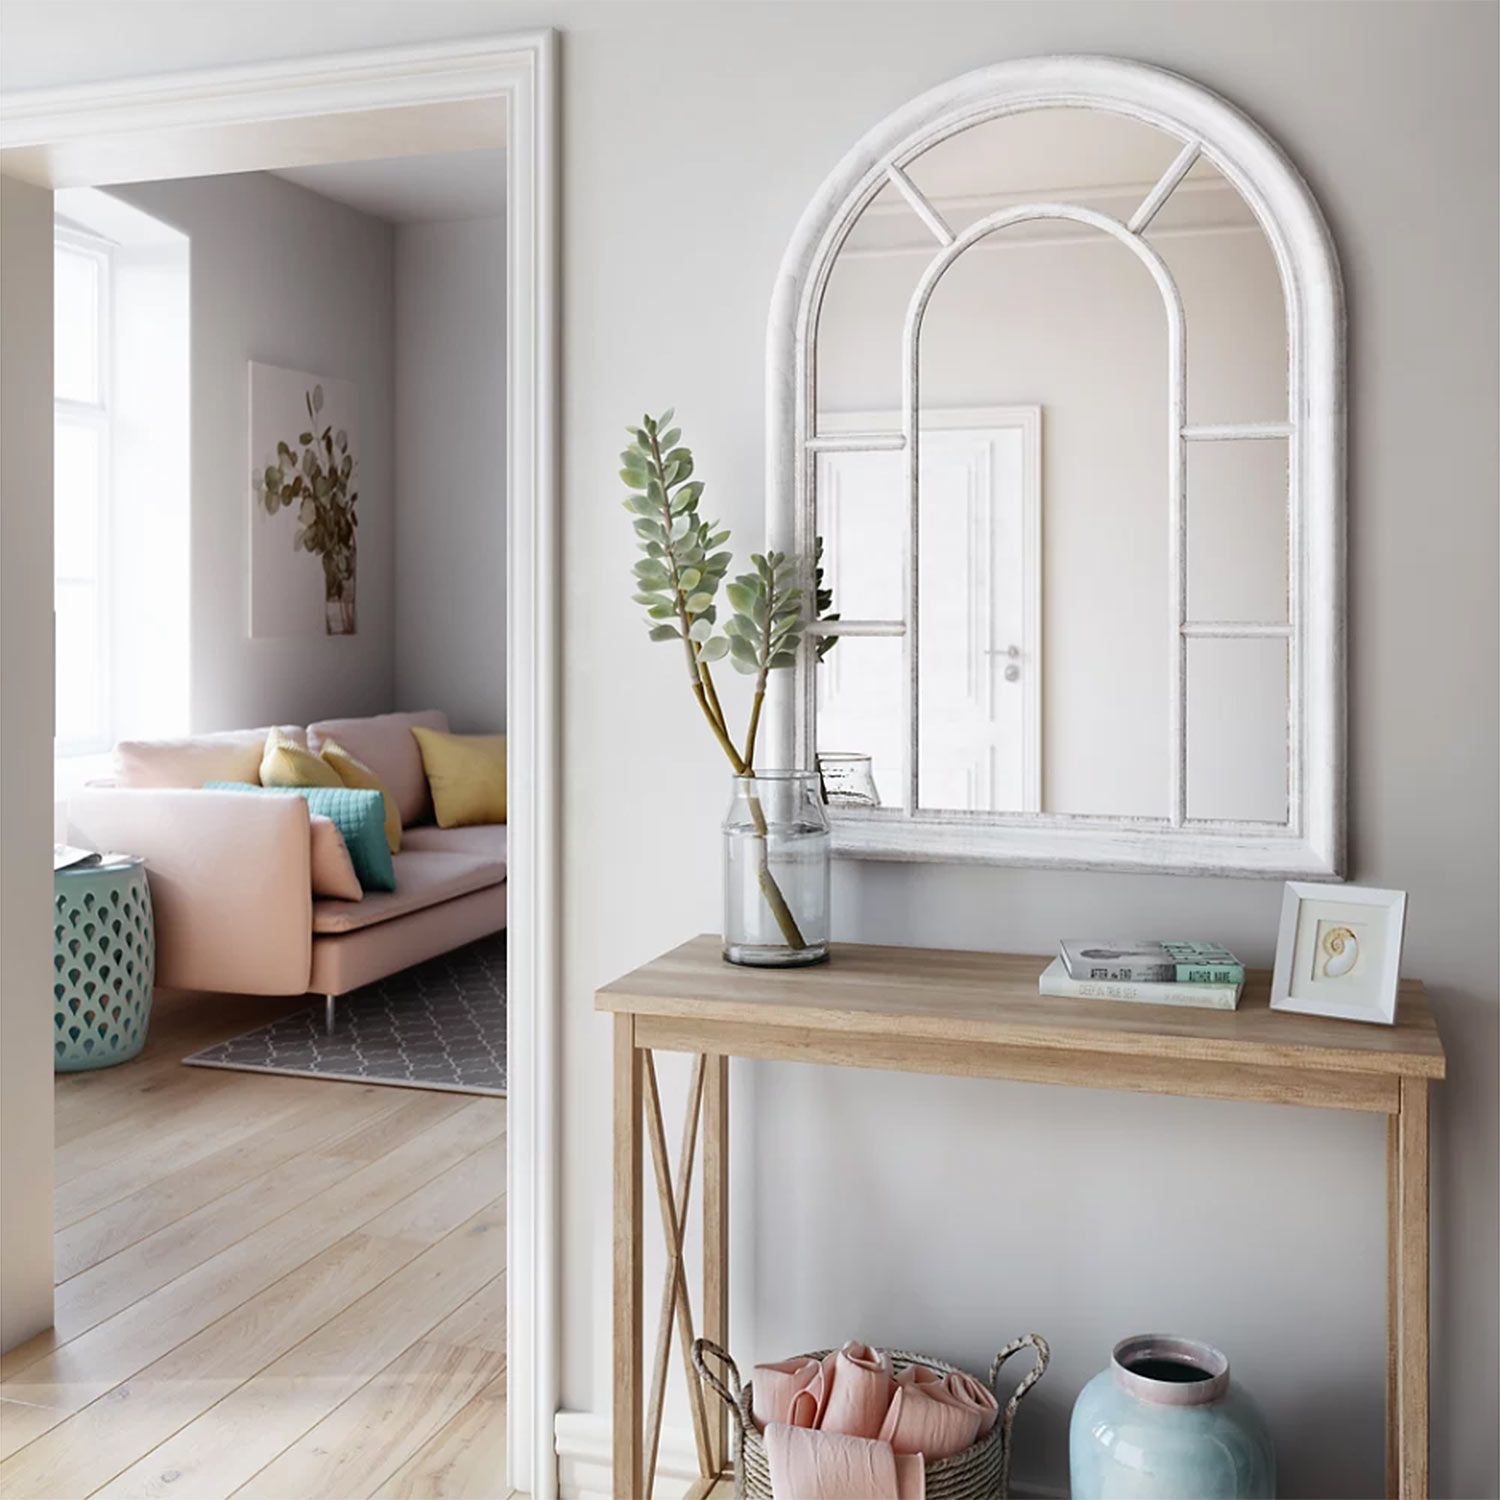 lema Figura Establecer 15 espejos ventana para decorar los interiores del hogar